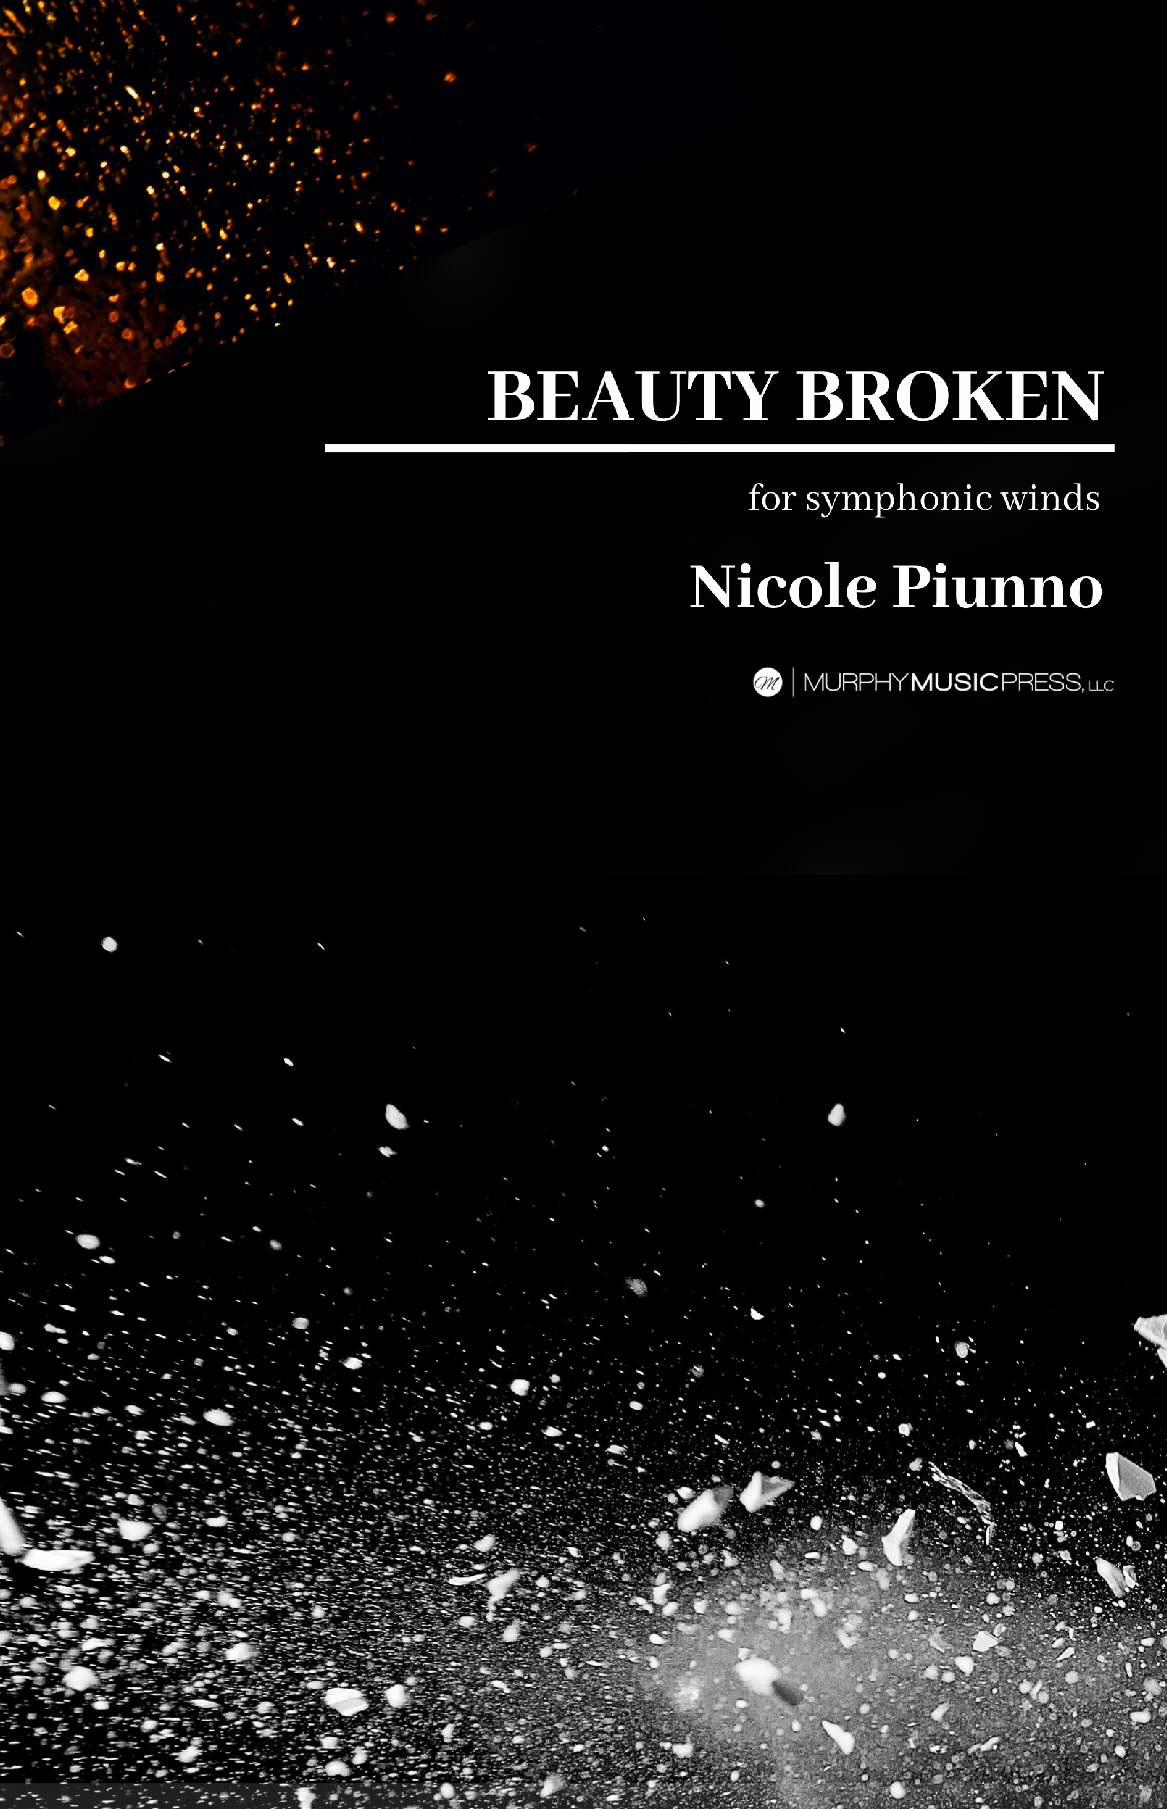 Beauty Broken  by Nicole Piunno